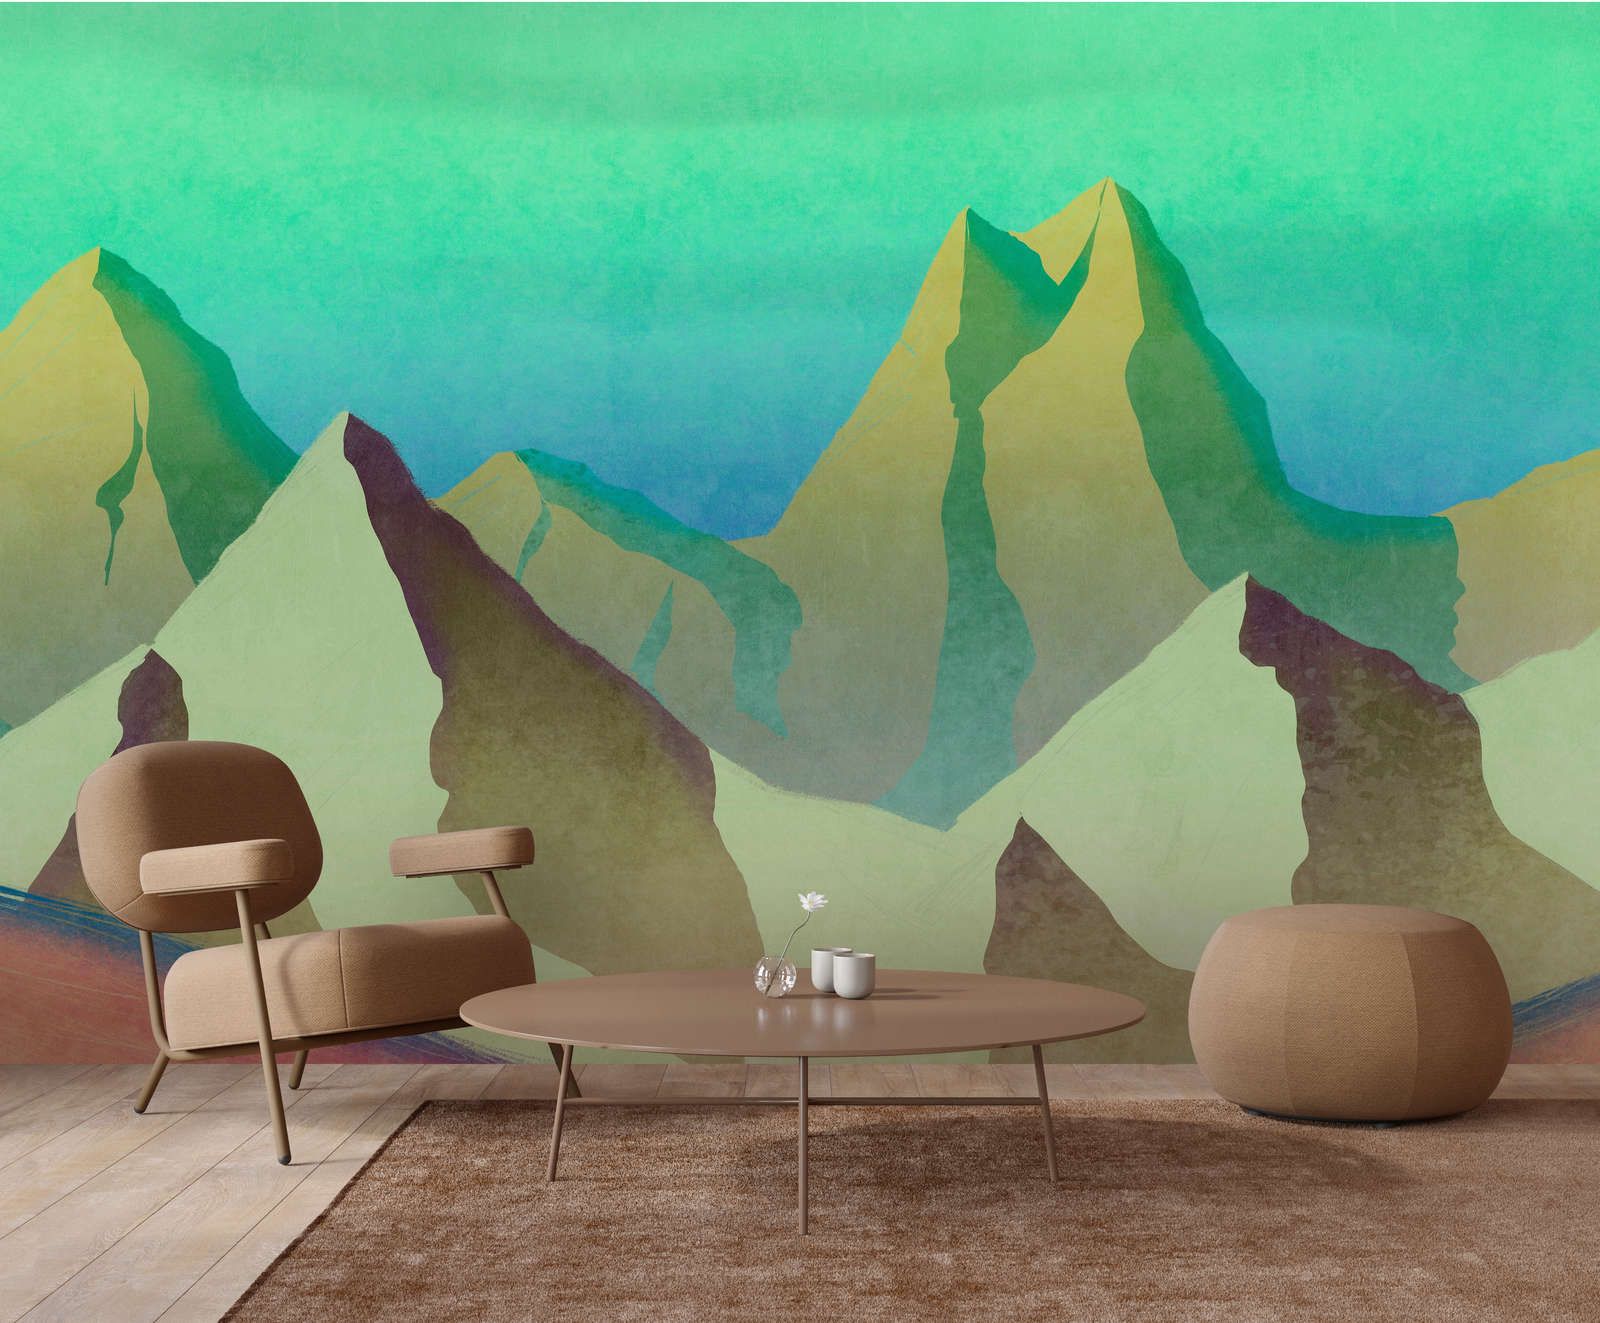             Digital behang »altitude 2« - Abstracte bergen in groen met vintage pleisterstructuur - Glad, licht glanzend premium vliesmateriaal
        